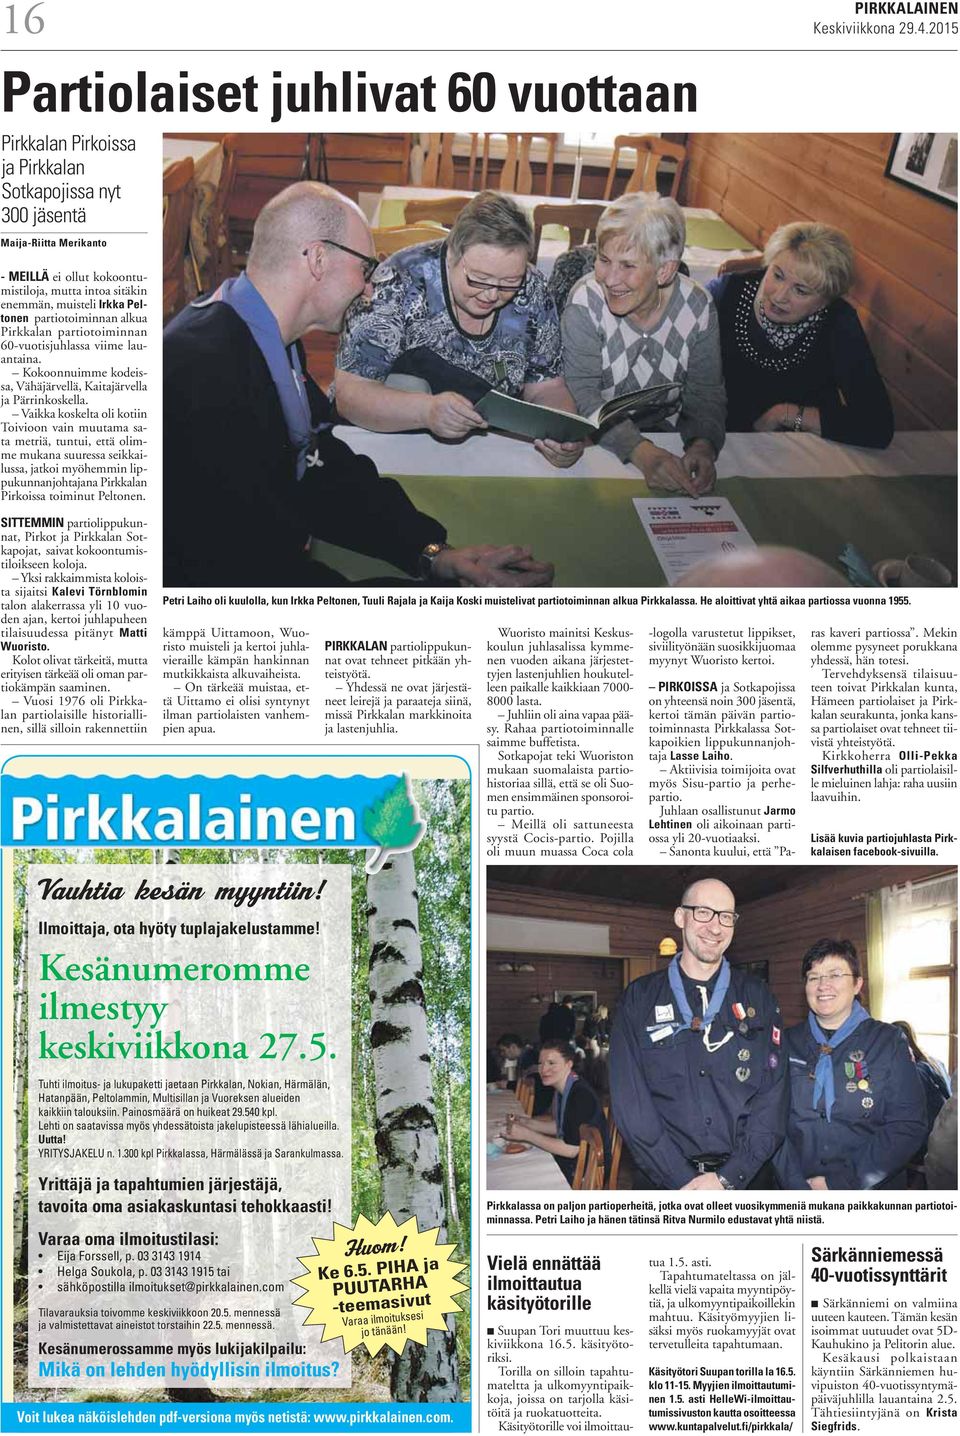 Irkka Peltonen partiotoiminnan alkua Pirkkalan partiotoiminnan 60-vuotisjuhlassa viime lauantaina. Kokoonnuimme kodeissa, Vähäjärvellä, Kaitajärvella ja Pärrinkoskella.